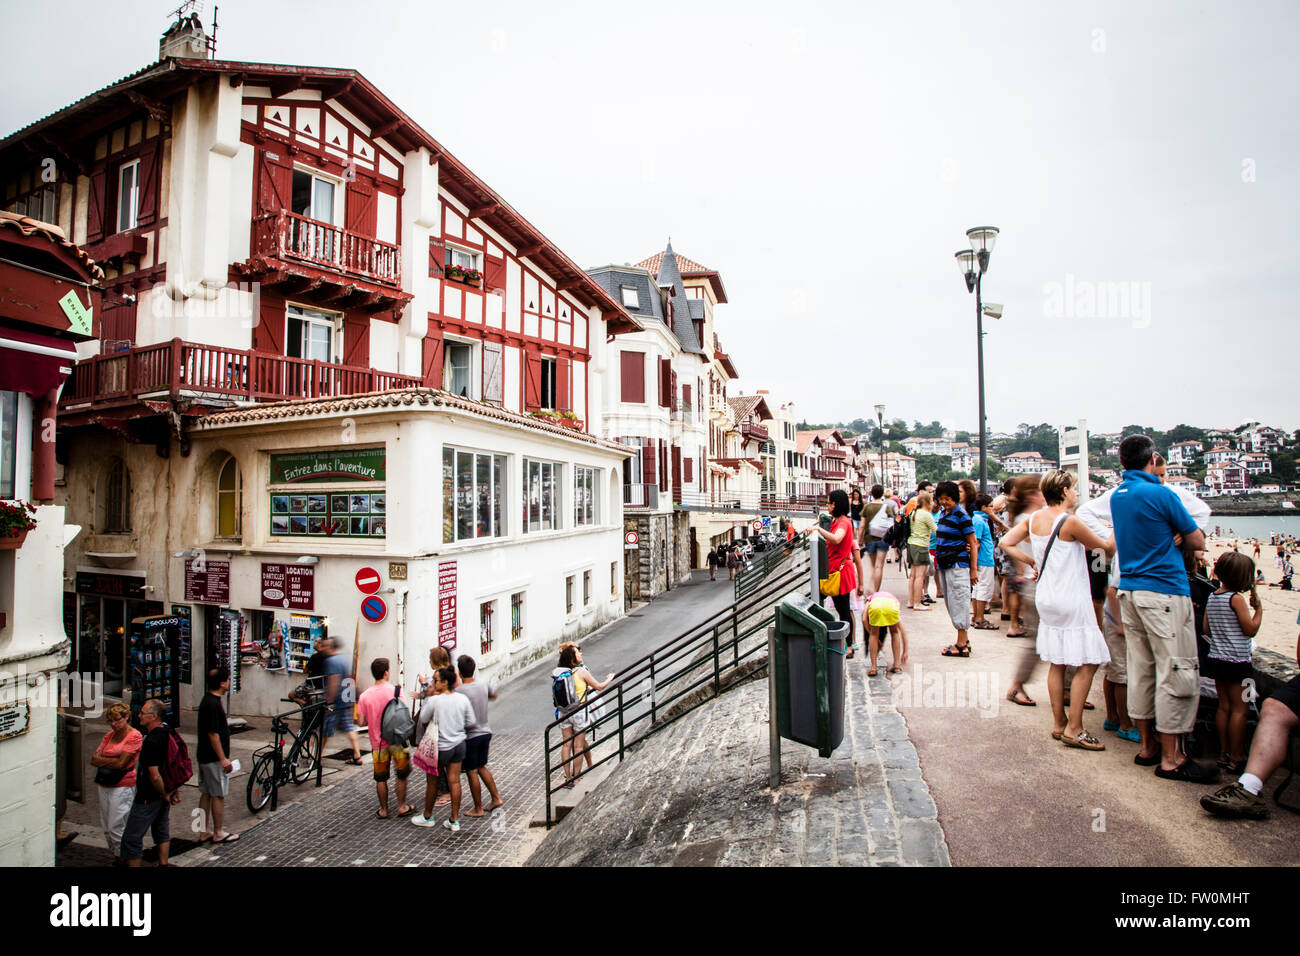 Street in Saint Jean de Luz, France Stock Photo